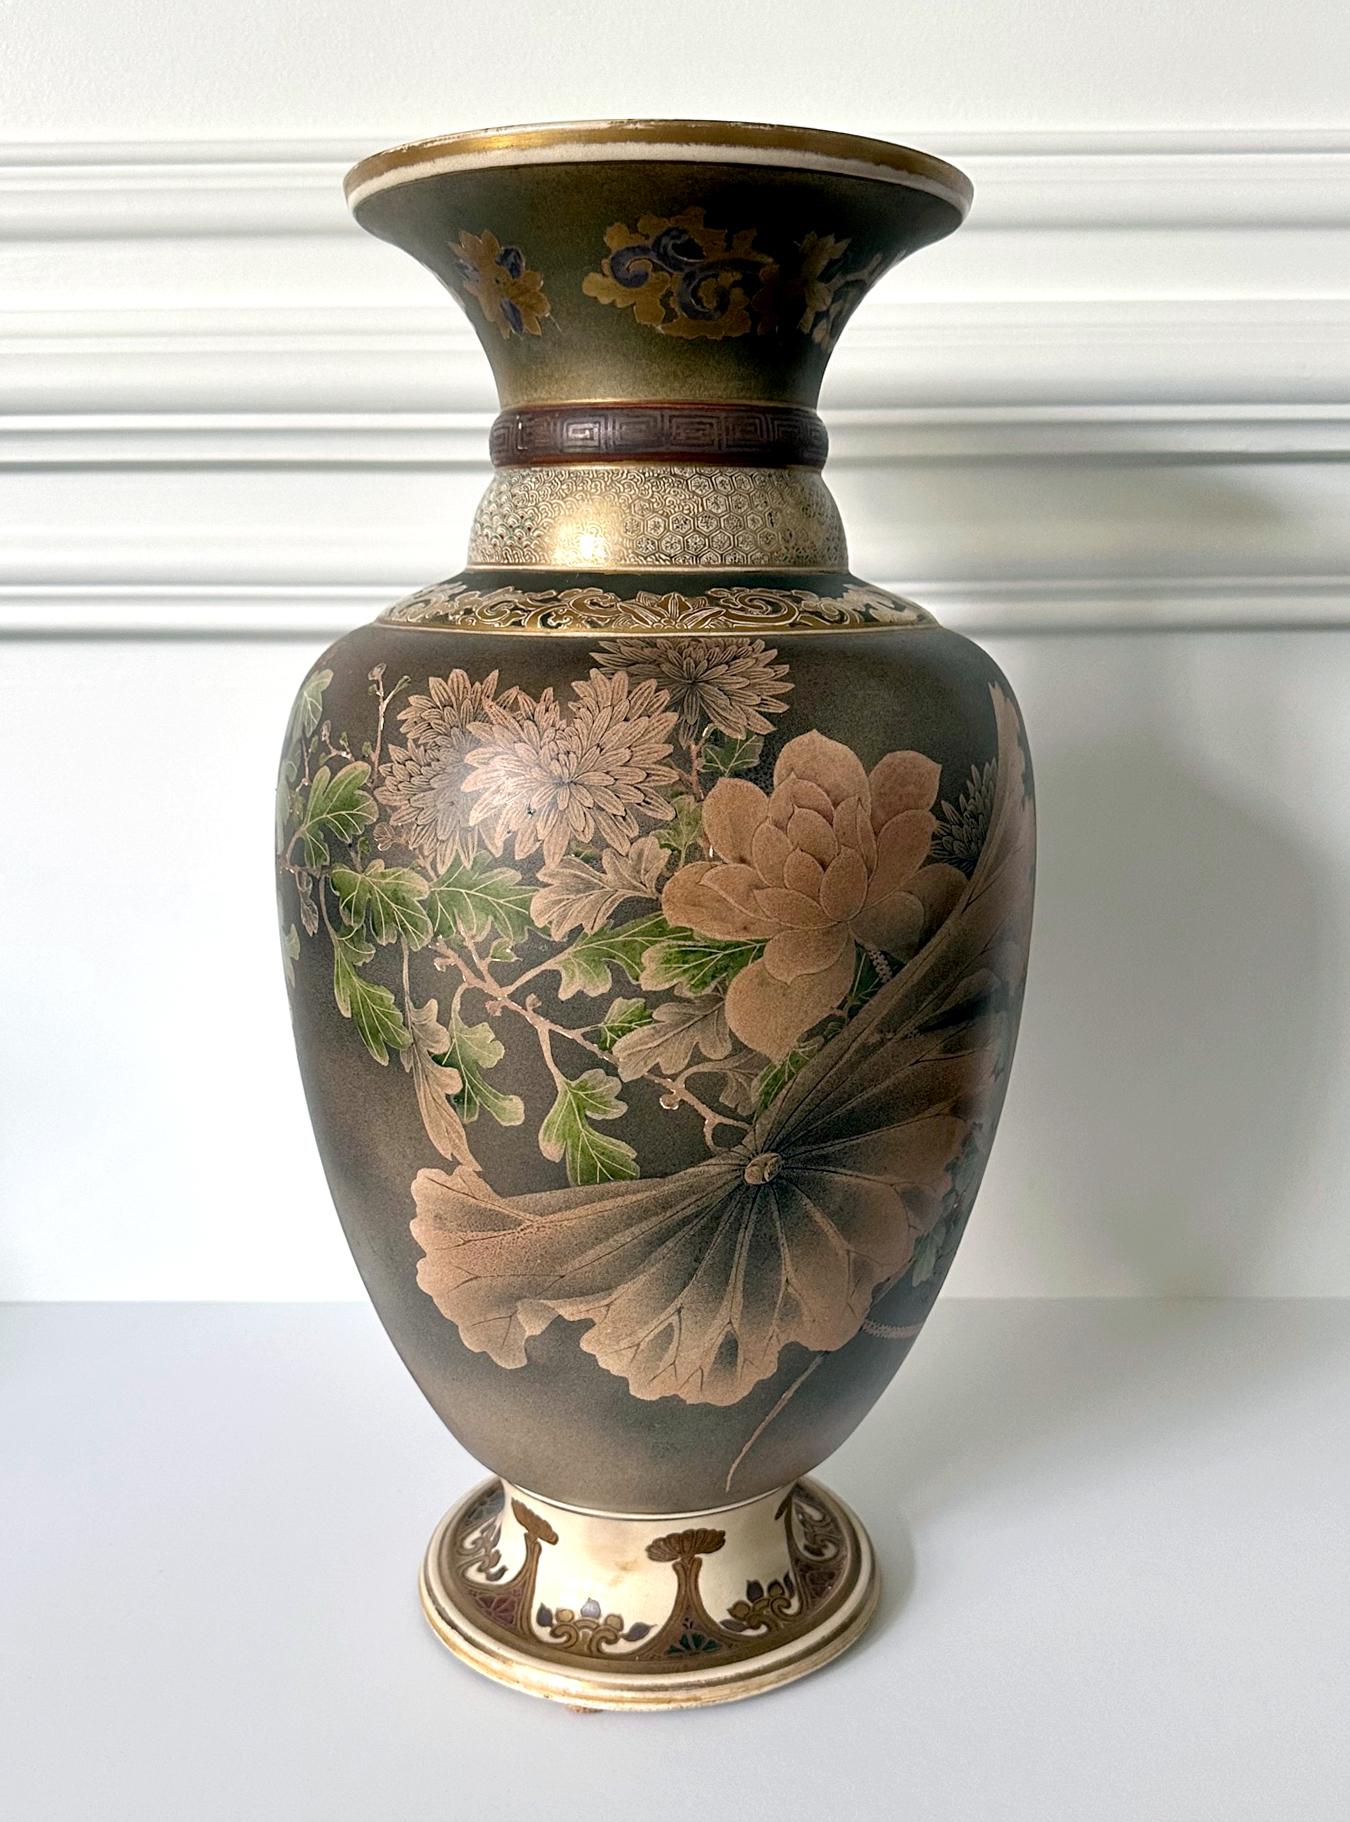 Grand vase japonais en céramique de la fin de la période Meiji, vers les années 1890-1910, par Kinkozan (1645-1927). L'un des plus grands studios de fabrication de céramiques d'exportation de l'époque, basé à Kyoto. Dans le style typique des Satsuma